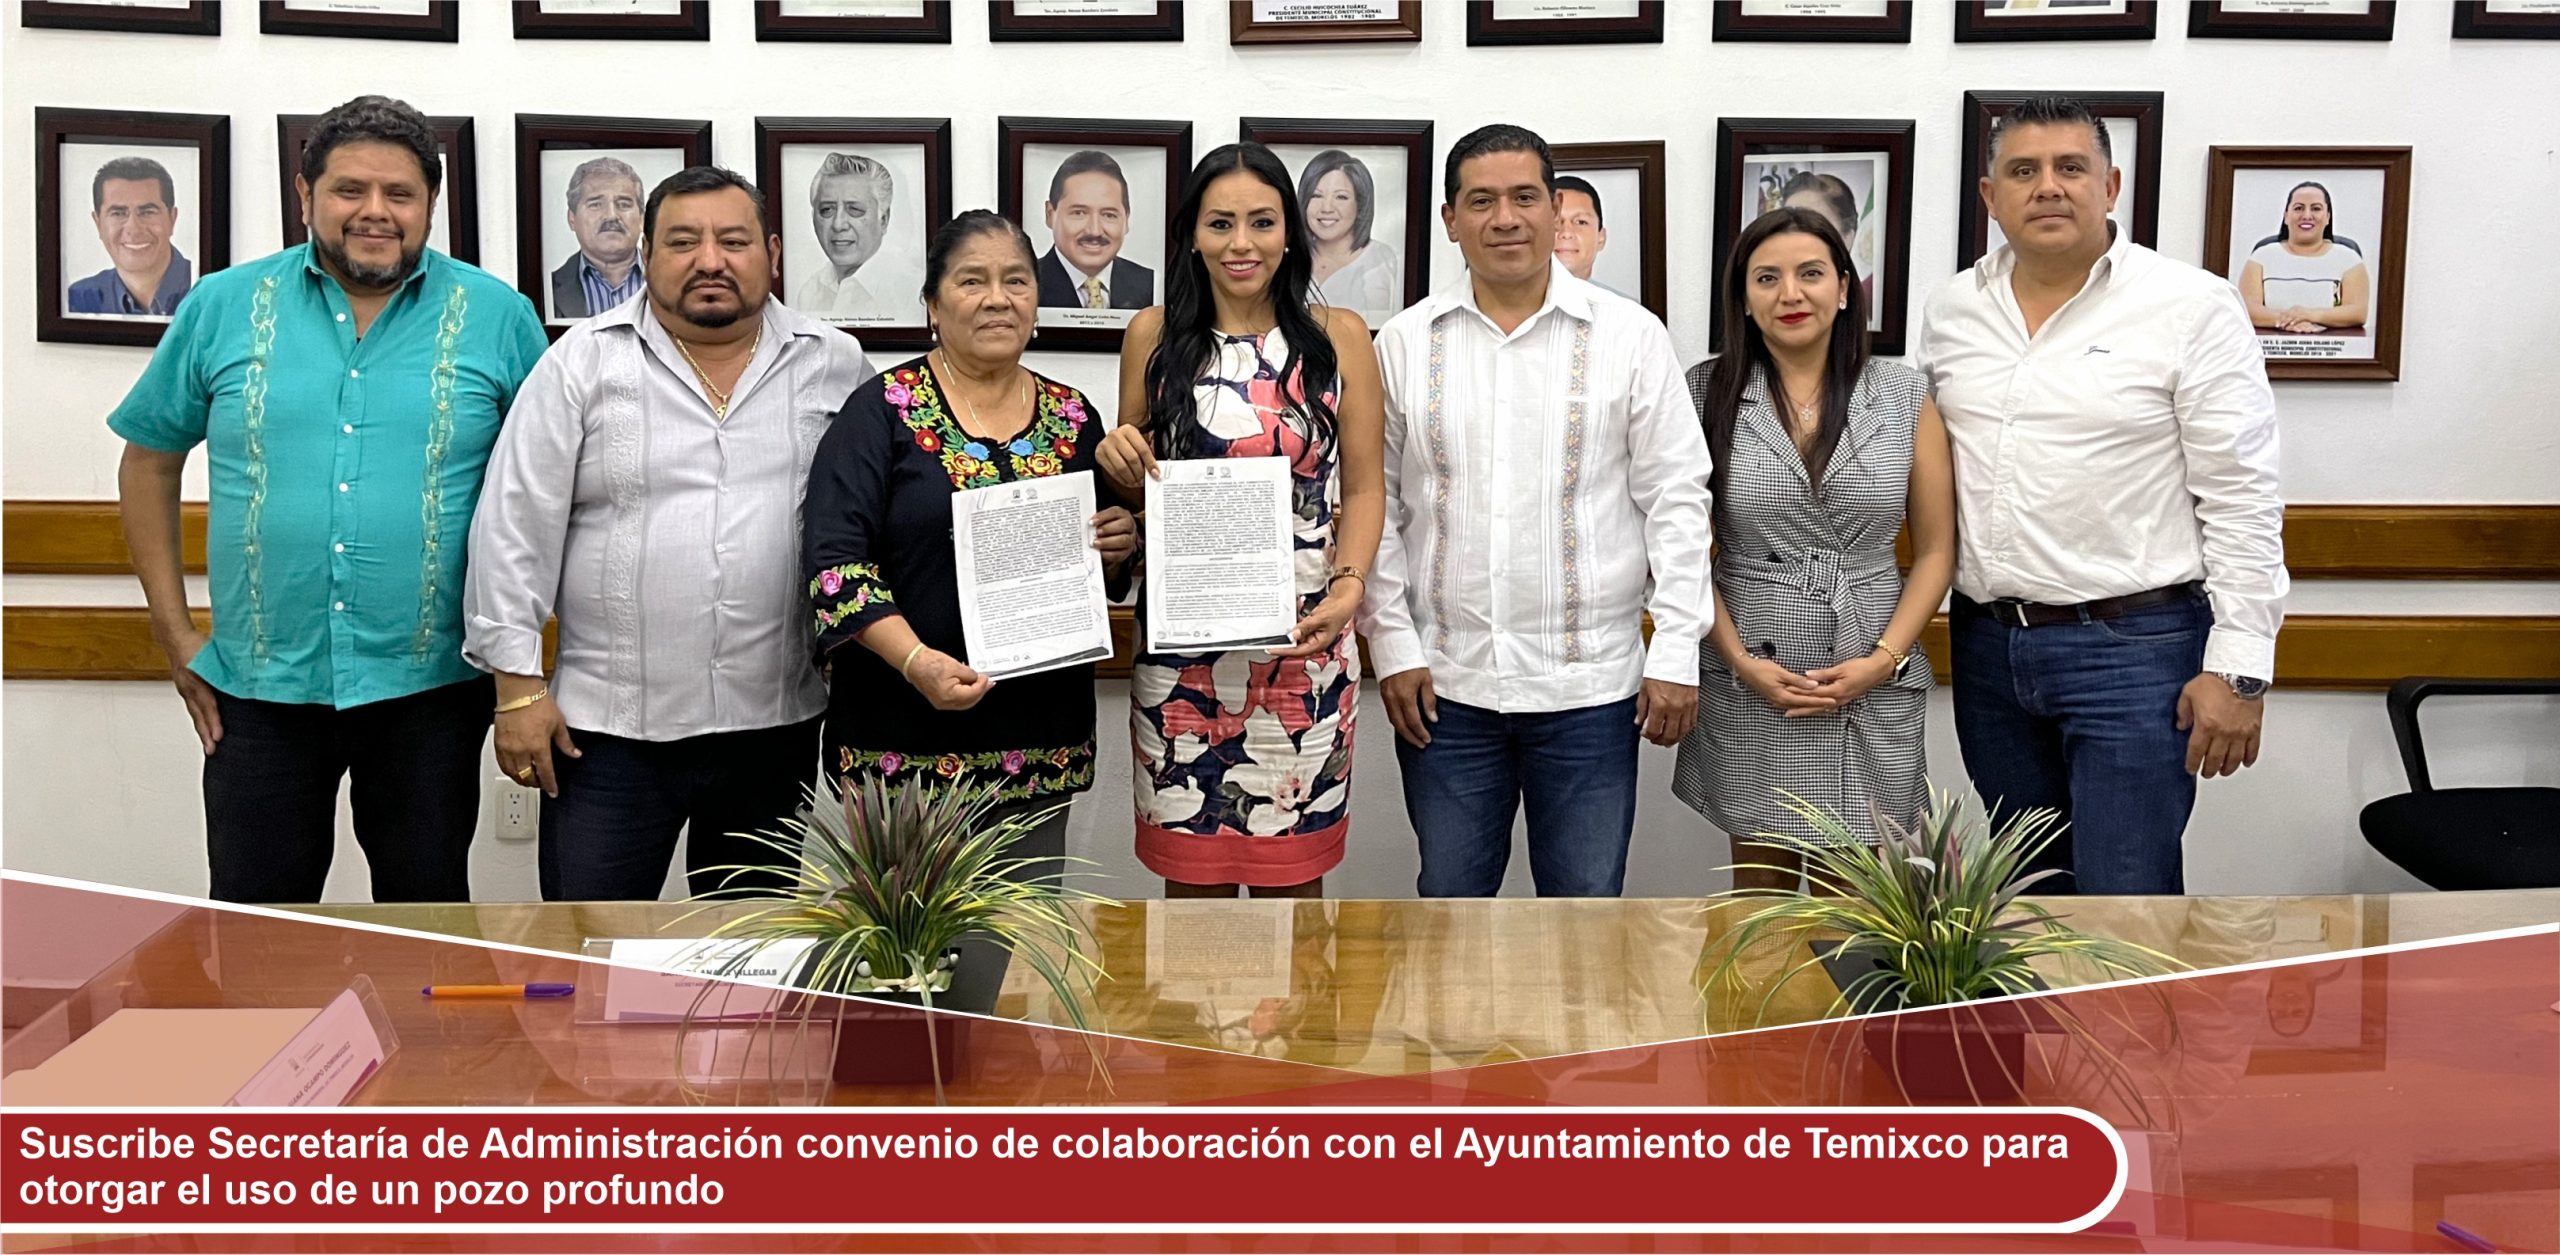 Suscribe Secretaría de Administración convenio de colaboración con el Ayuntamiento de Temixco para